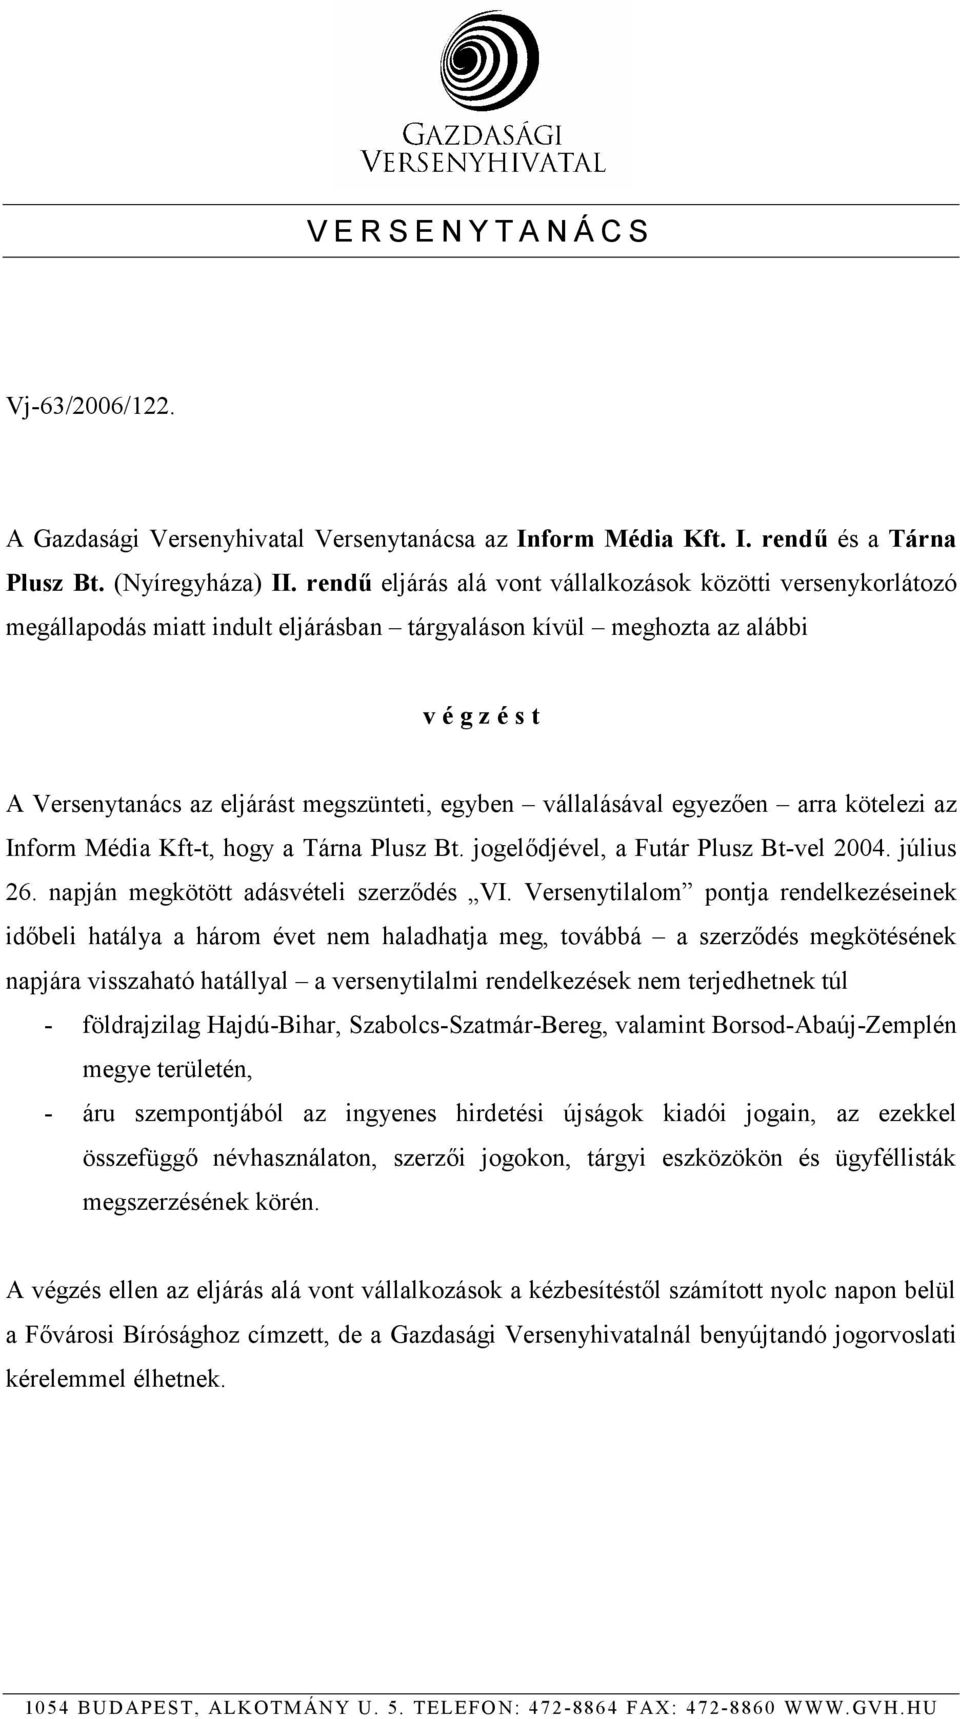 vállalásával egyezően arra kötelezi az Inform Média Kft-t, hogy a Tárna Plusz Bt. jogelődjével, a Futár Plusz Bt-vel 2004. július 26. napján megkötött adásvételi szerződés VI.